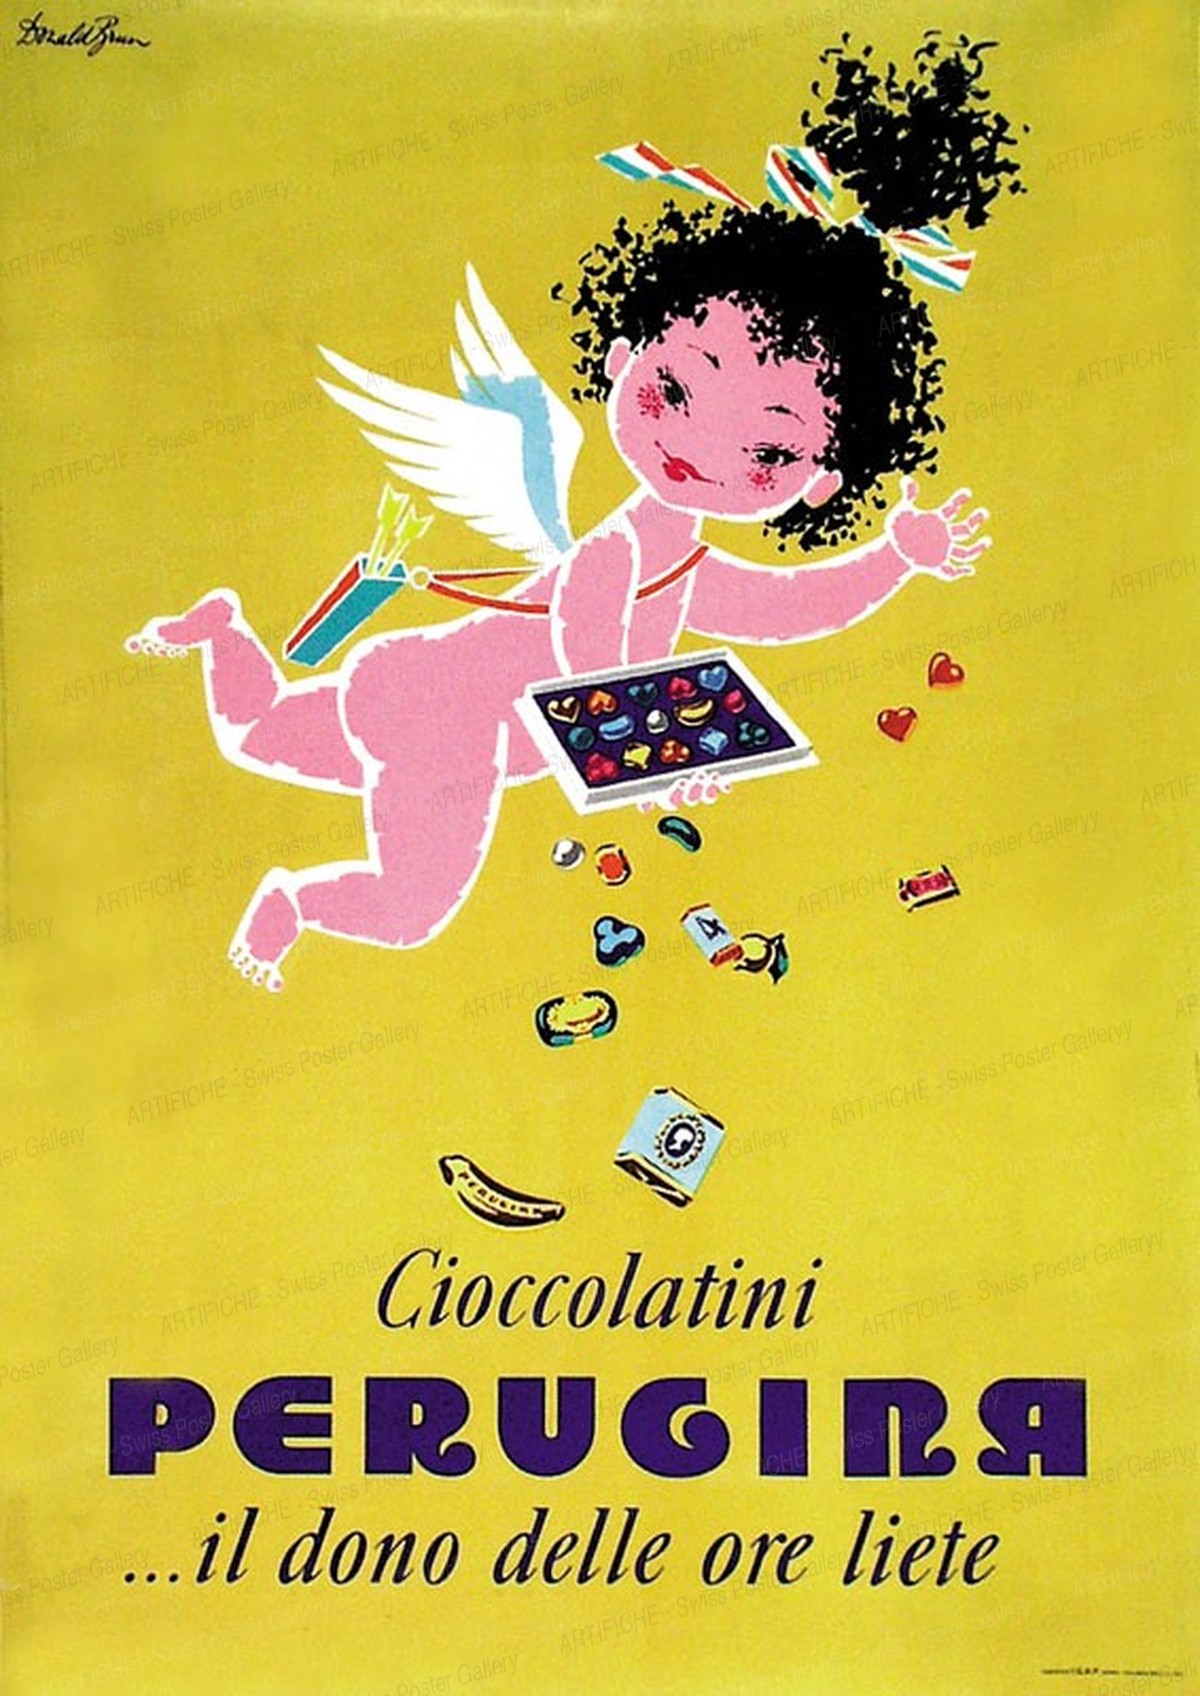 Perugina Chocolate, Donald Brun